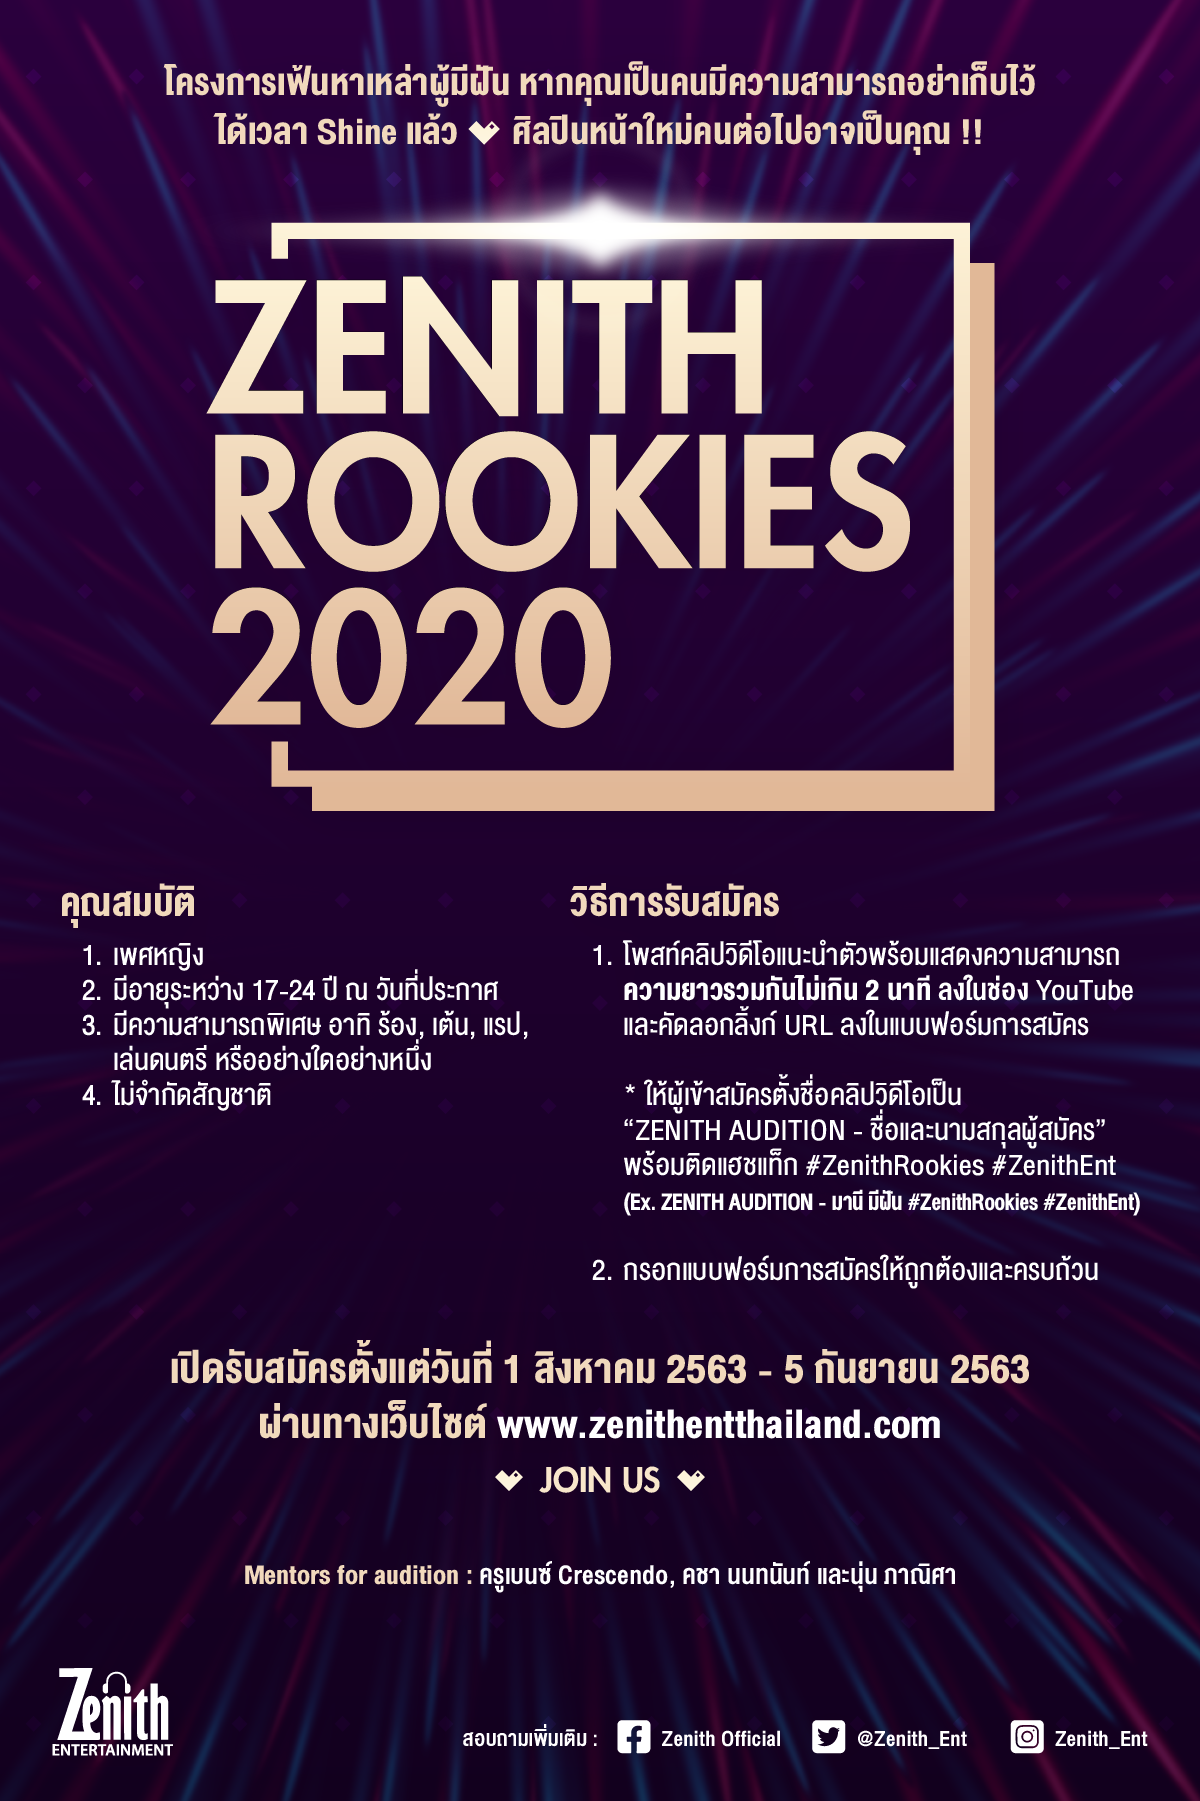 ซีนิธ เอ็นเตอร์เทนเมนต์ ประกาศโปรเจกต์ 'Zenith Rookies 2020’ เฟ้นหา!!   สาวผู้มีฝัน….คว้าโอกาส  เป็นศิลปินในสังกัด